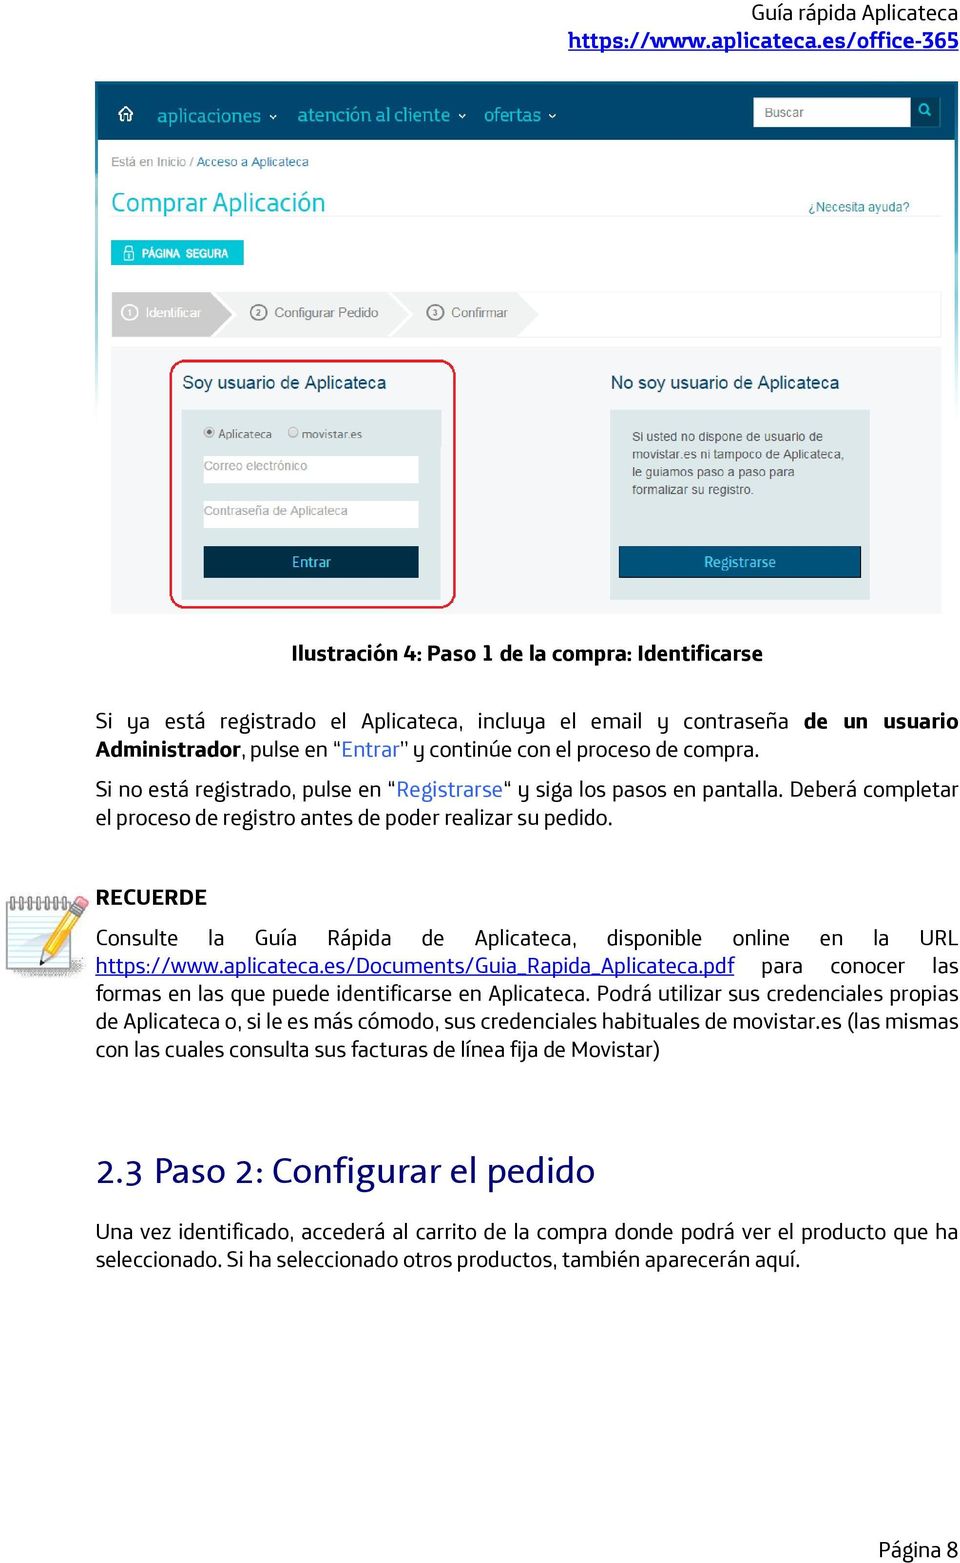 RECUERDE Consulte la Guía Rápida de Aplicateca, disponible online en la URL https://www.aplicateca.es/documents/guia_rapida_aplicateca.